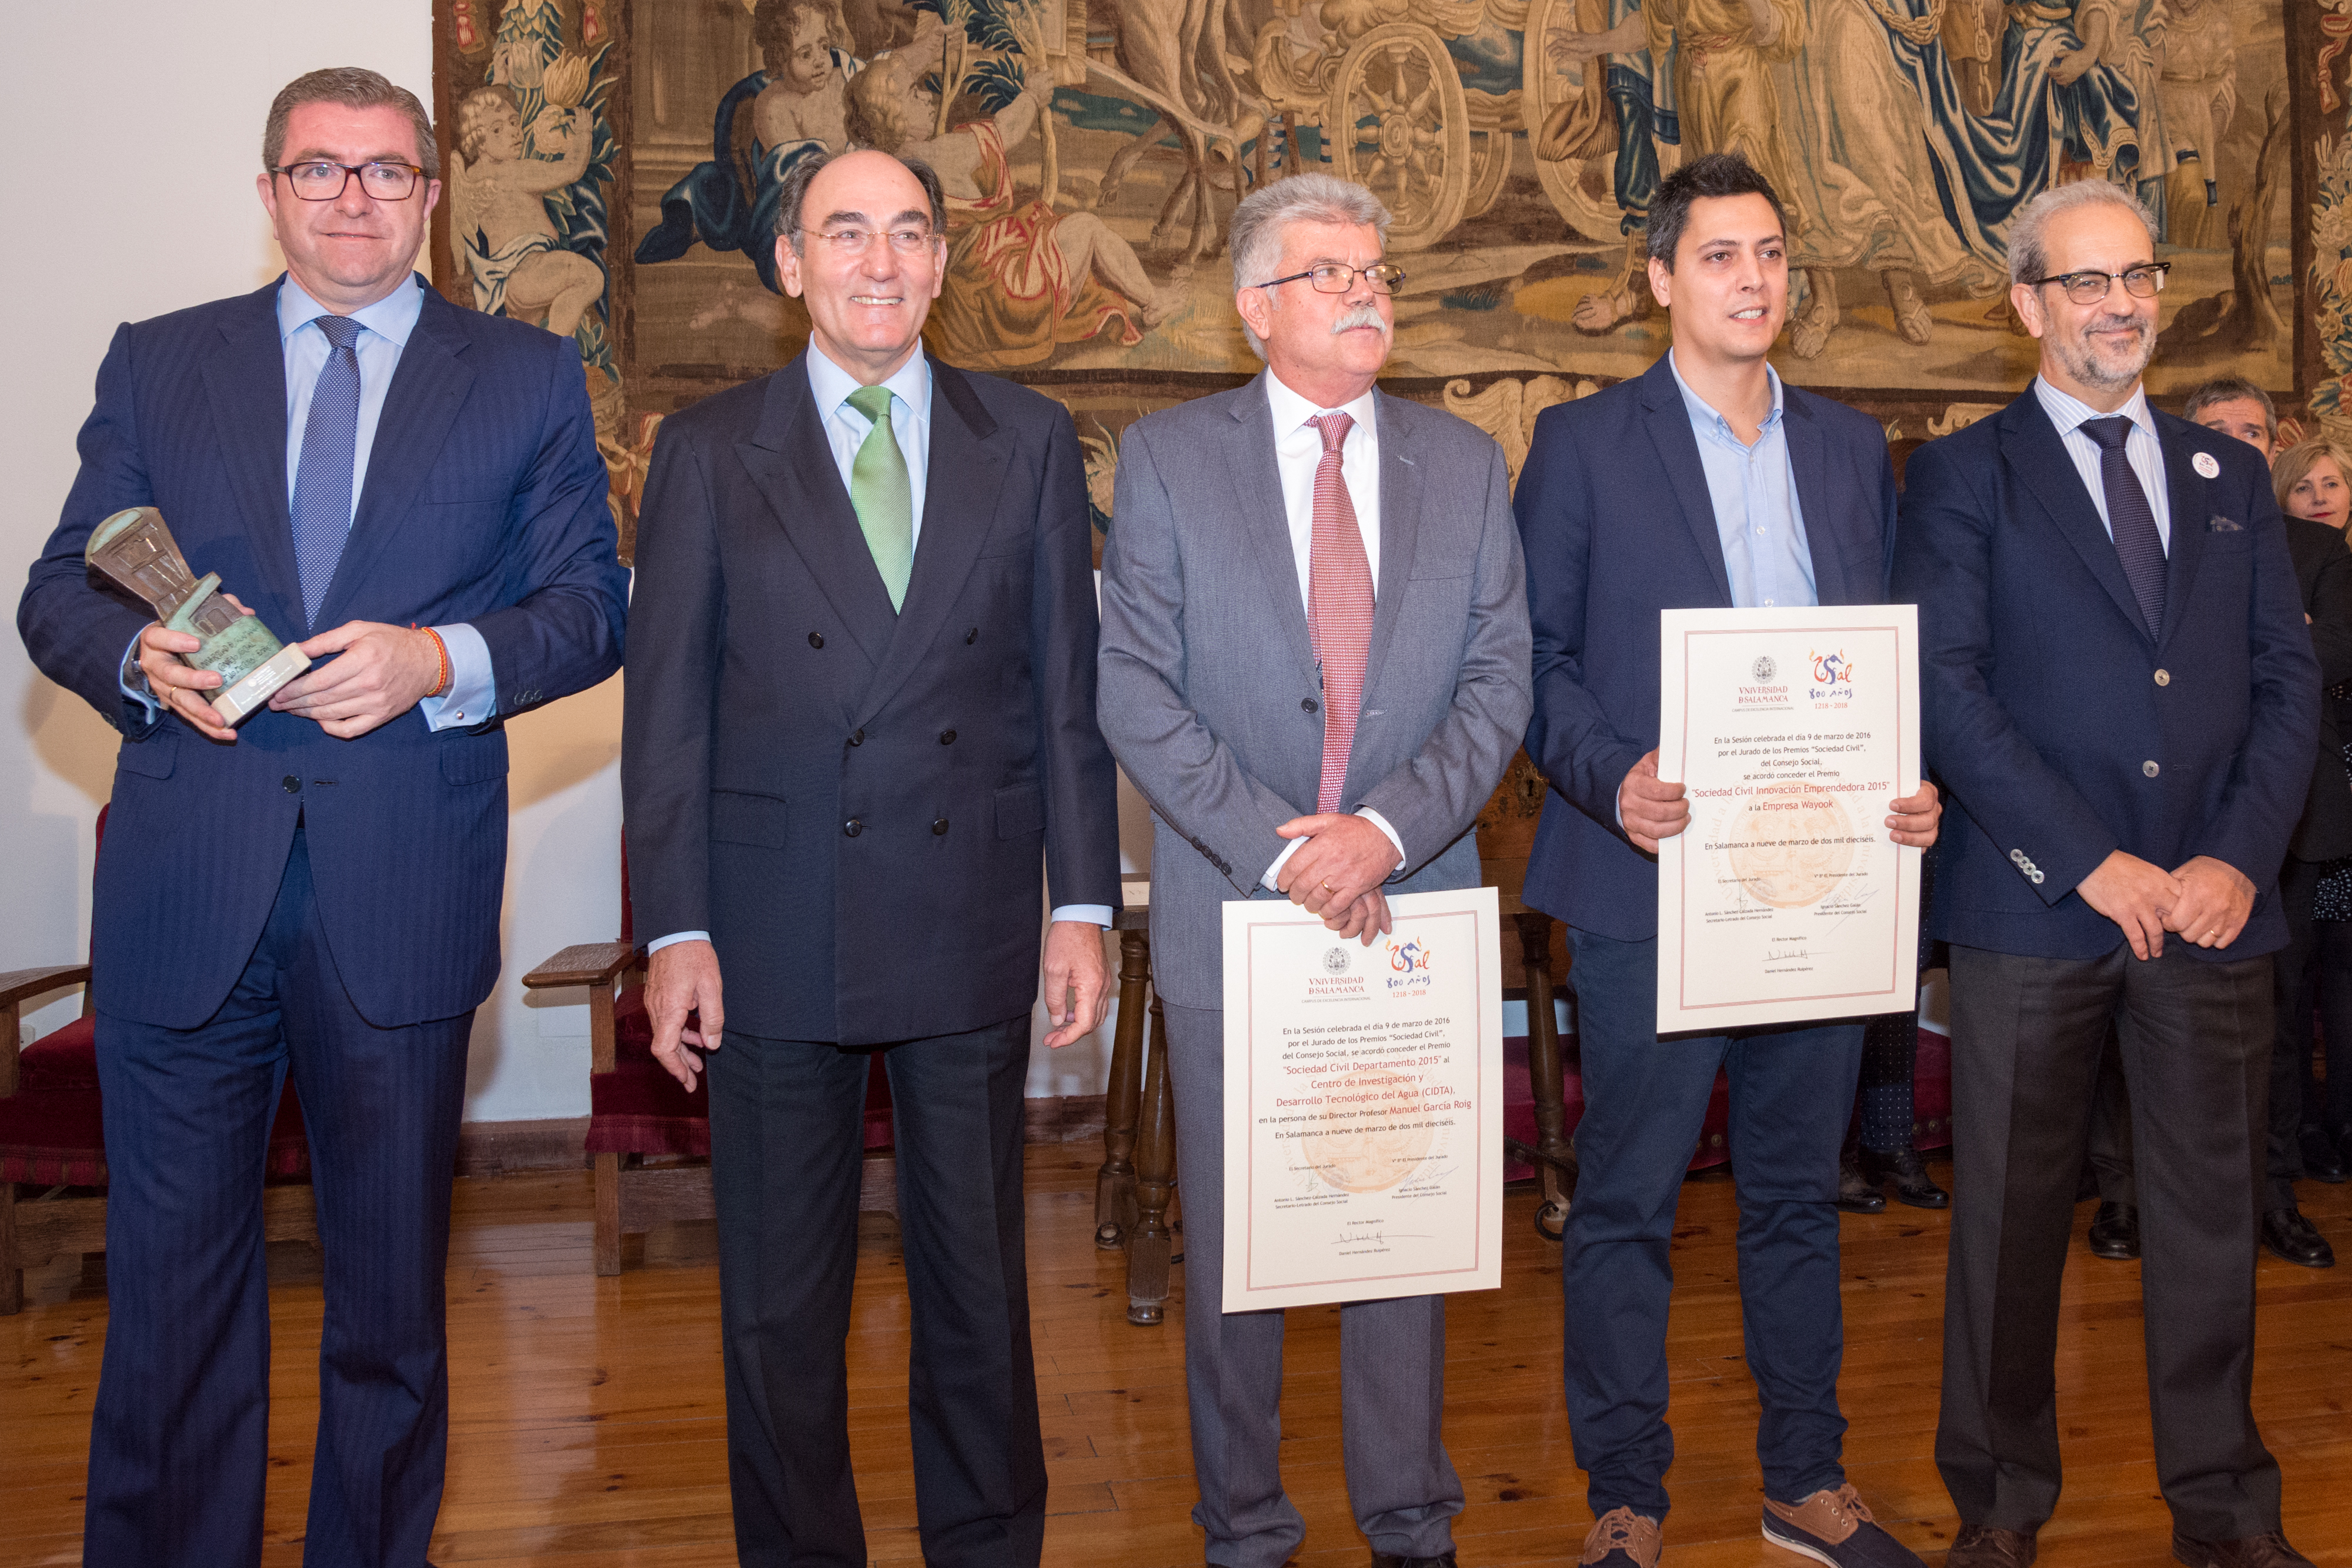 Constituido el nuevo pleno del Consejo Social de la Universidad bajo la presidencia de Ignacio Sánchez Galán para el período 2016-2020